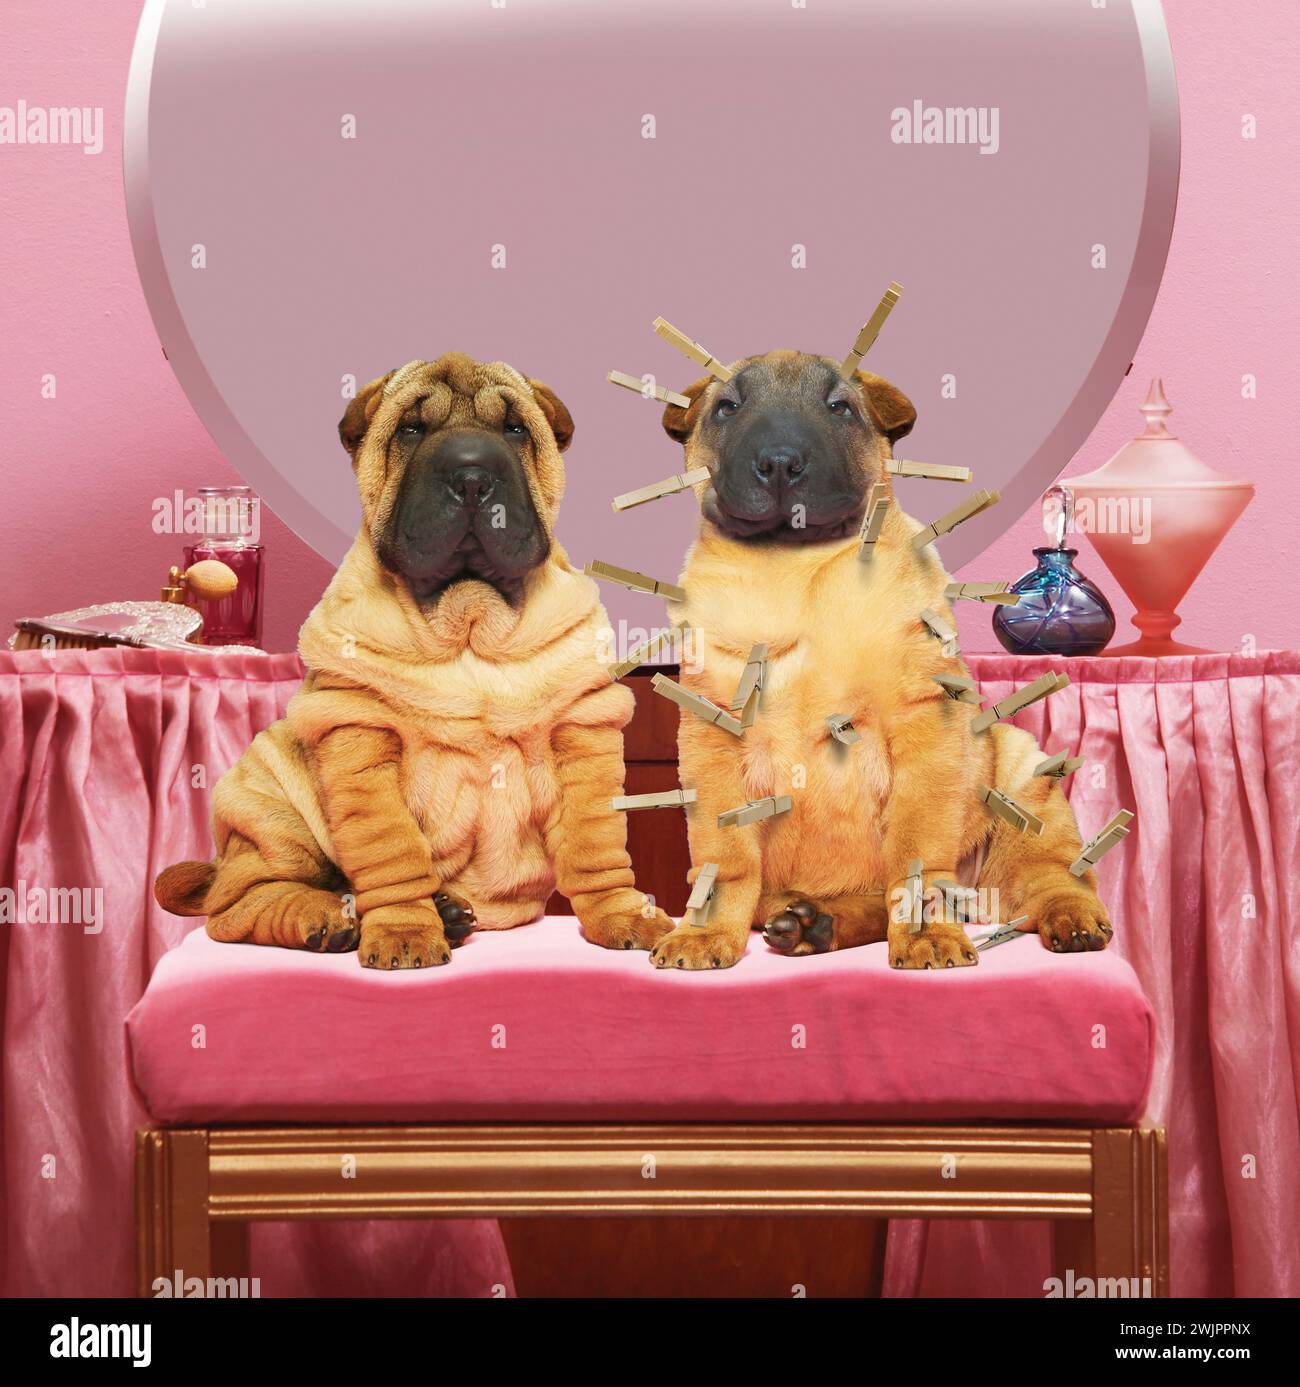 Deux chiens Shar Pei sont assis sur une vanité avec l'un portant des épingles à vêtements pour lisser ses rides dans une métaphore visuelle pour les stratégies anti-âge. Banque D'Images